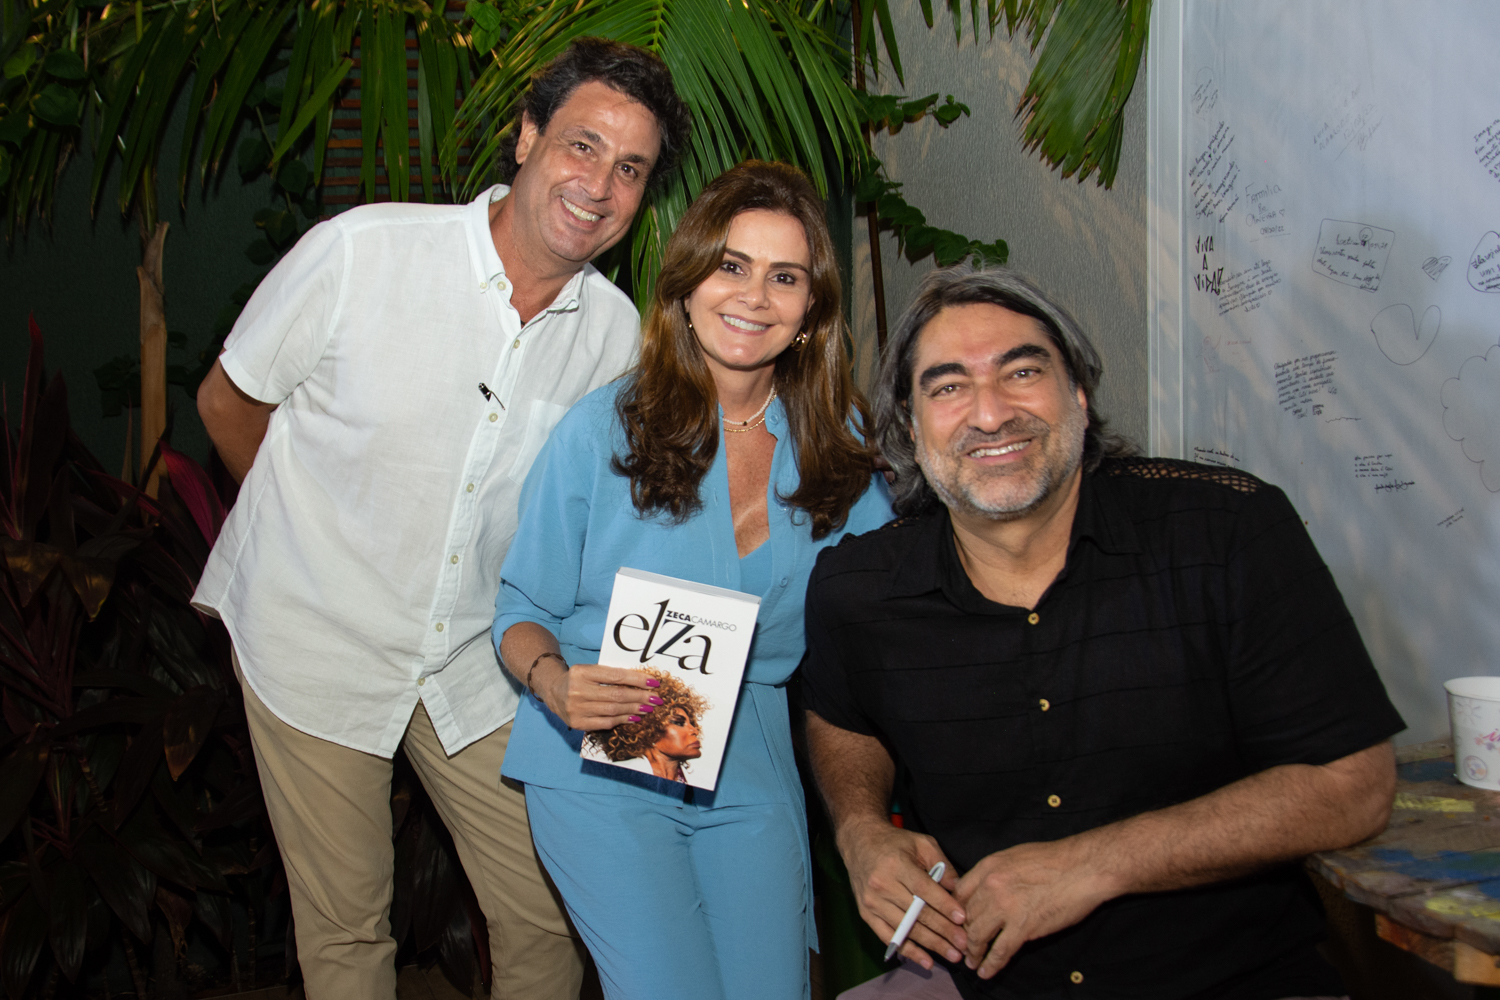 Zeca Camargo realiza sessão de autógrafos de seu livro “Elza” em Fortaleza